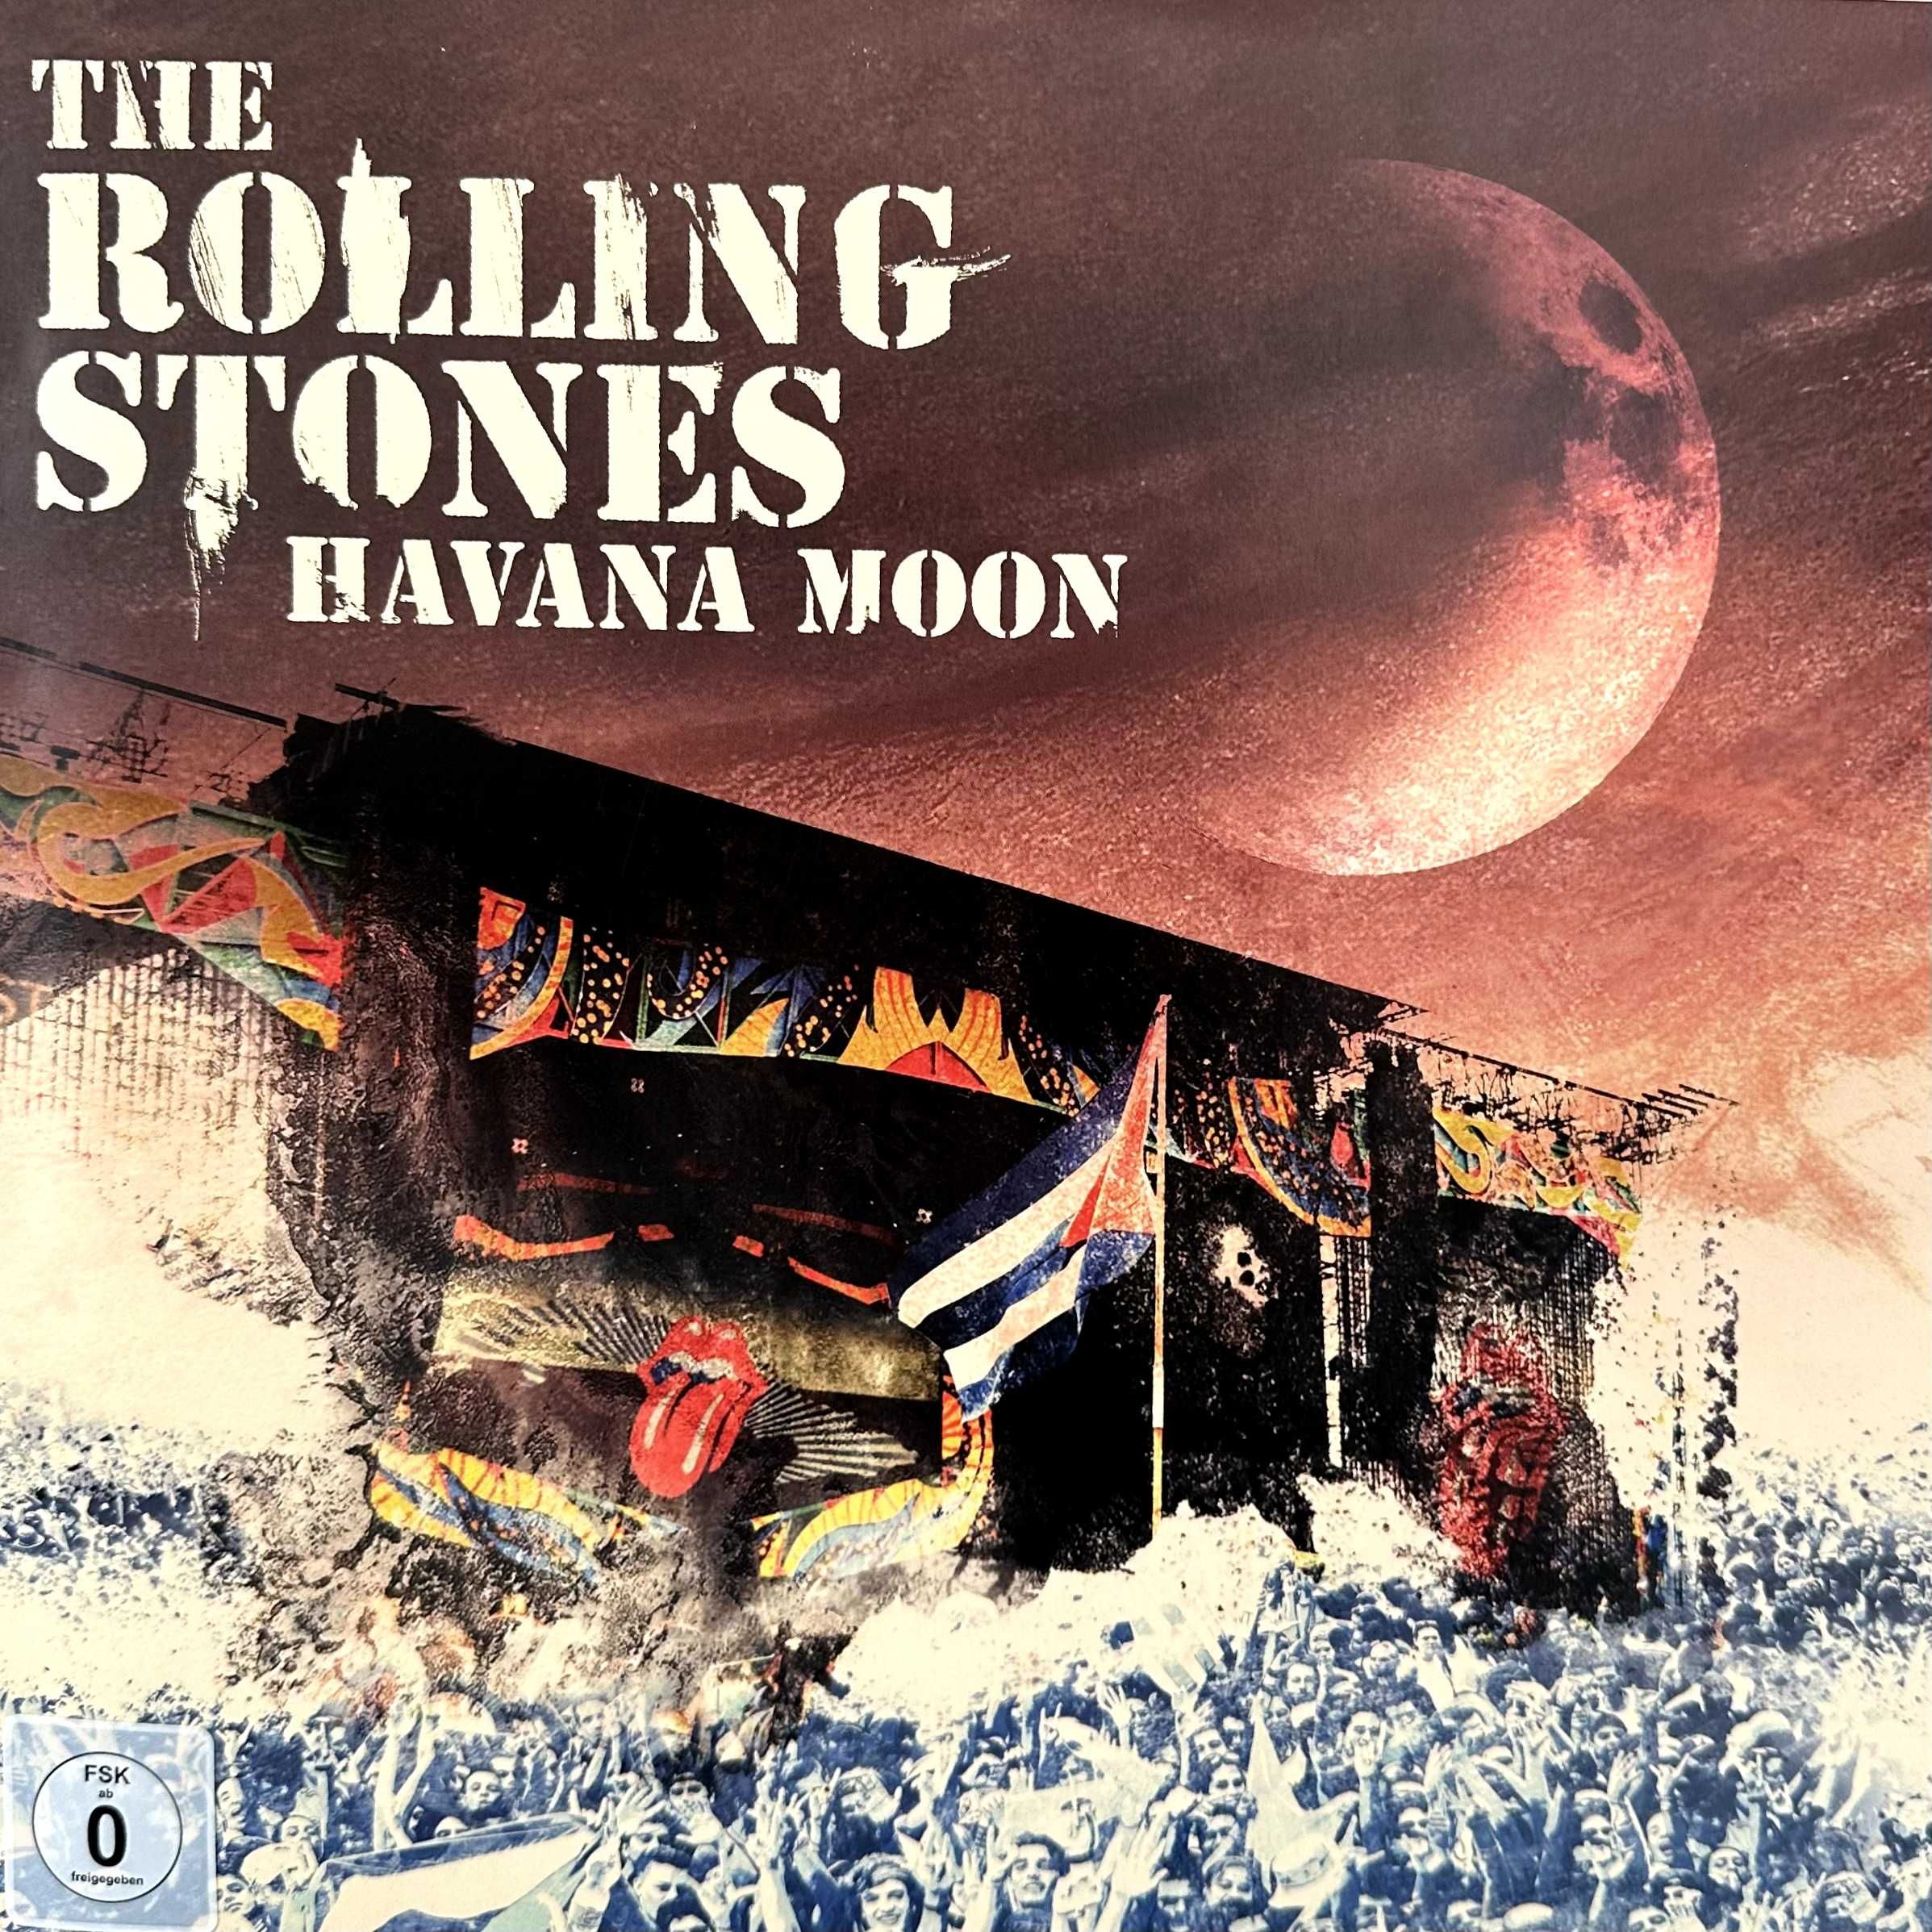 The Rolling Stones - Havana Moon(3LP + DVD, 2016, Europe)